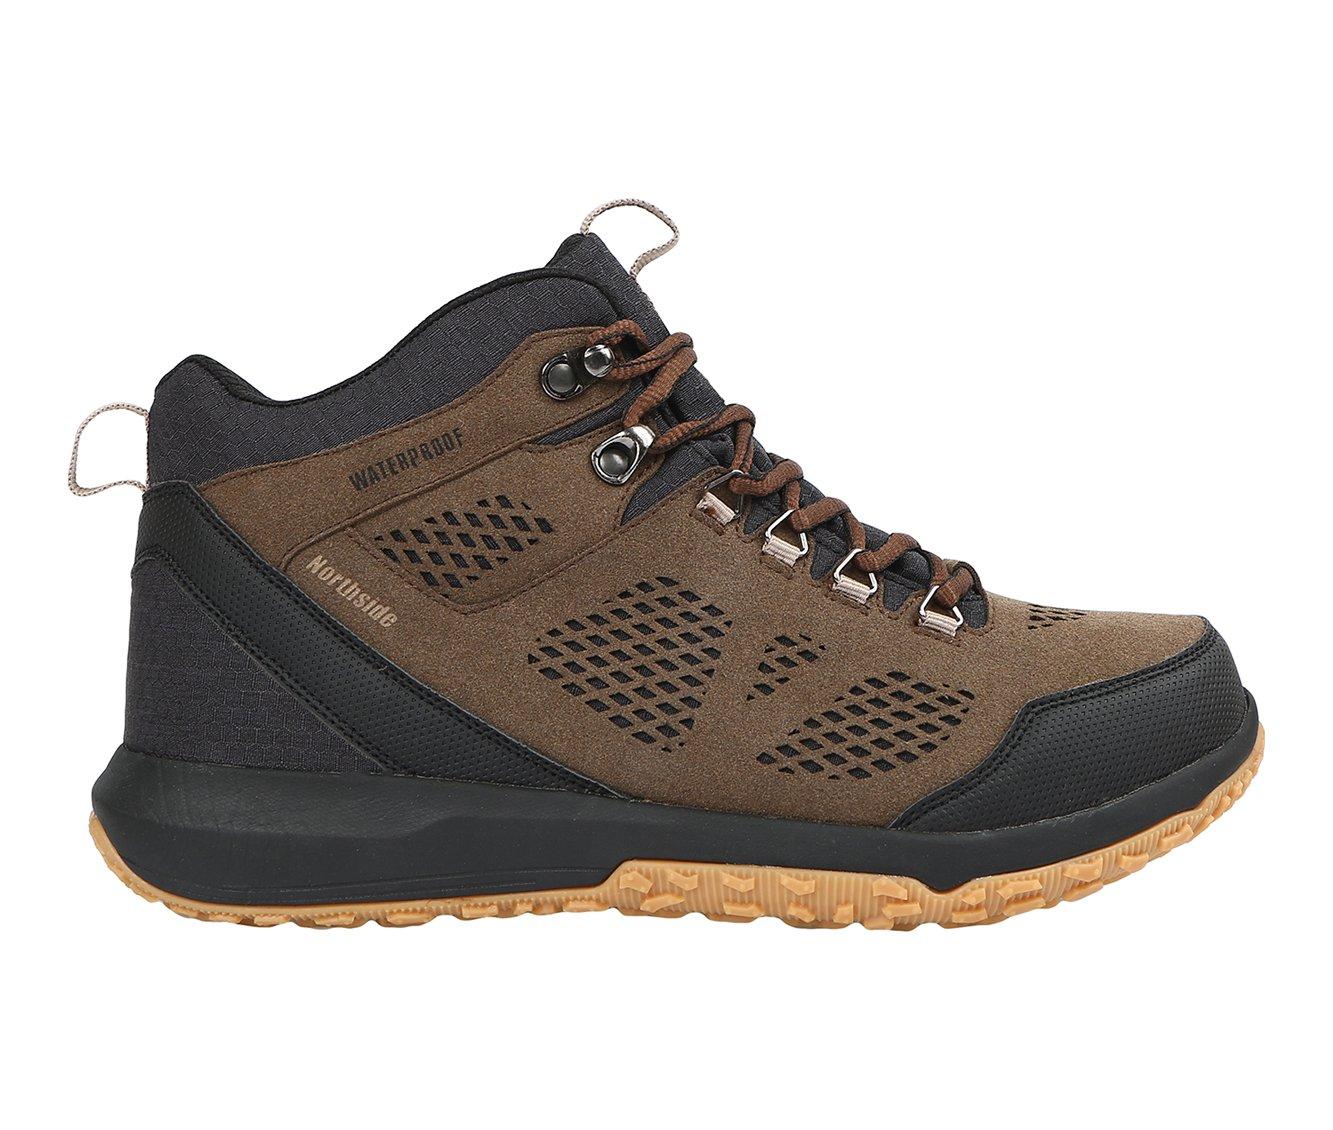 Men's Northside Benton Mid Waterproof Hiking Boots